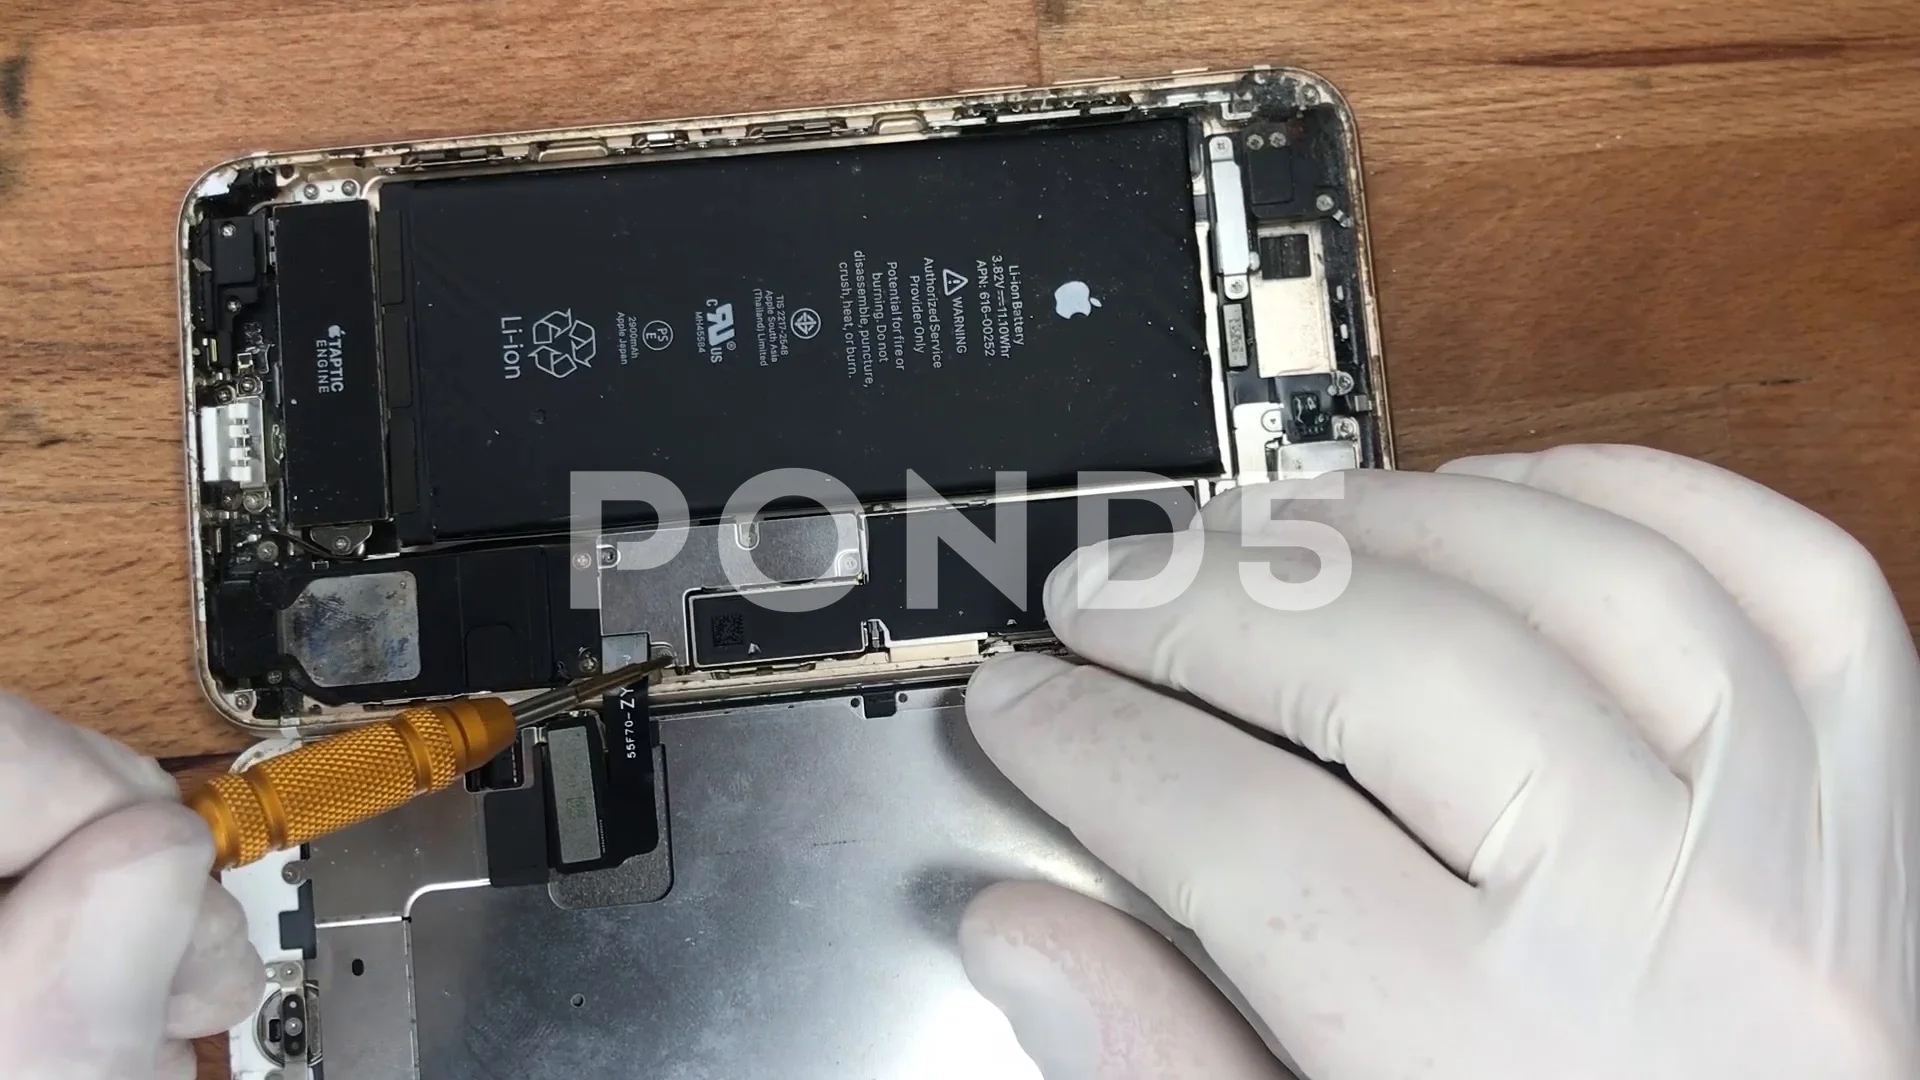 iphone repair gadget technology case footage 107800991 prevstill